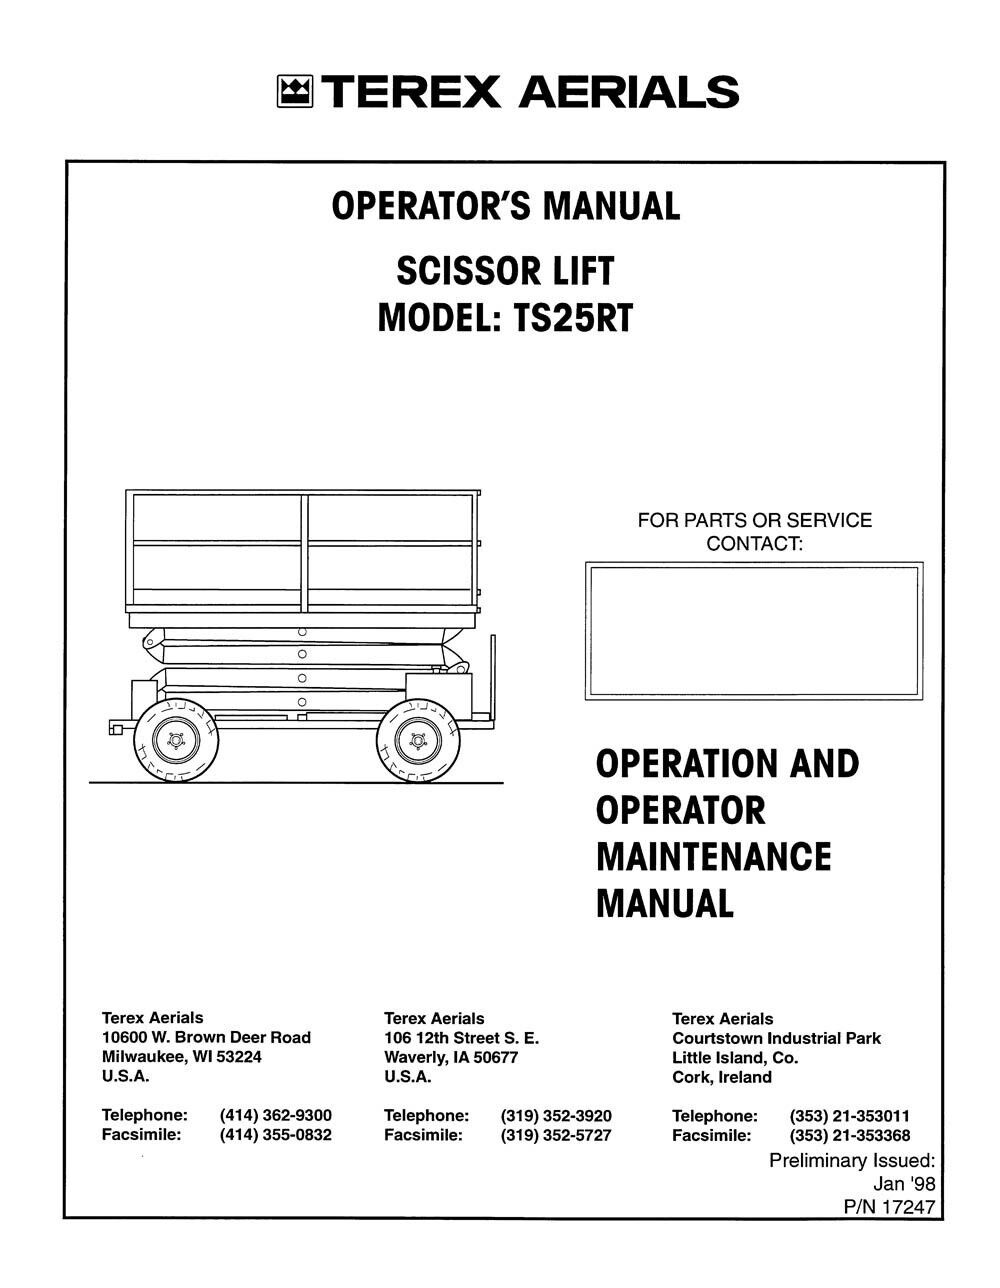 Terex Aerials Scissor Lift TS25RT Operators Operation Maintenance Manual